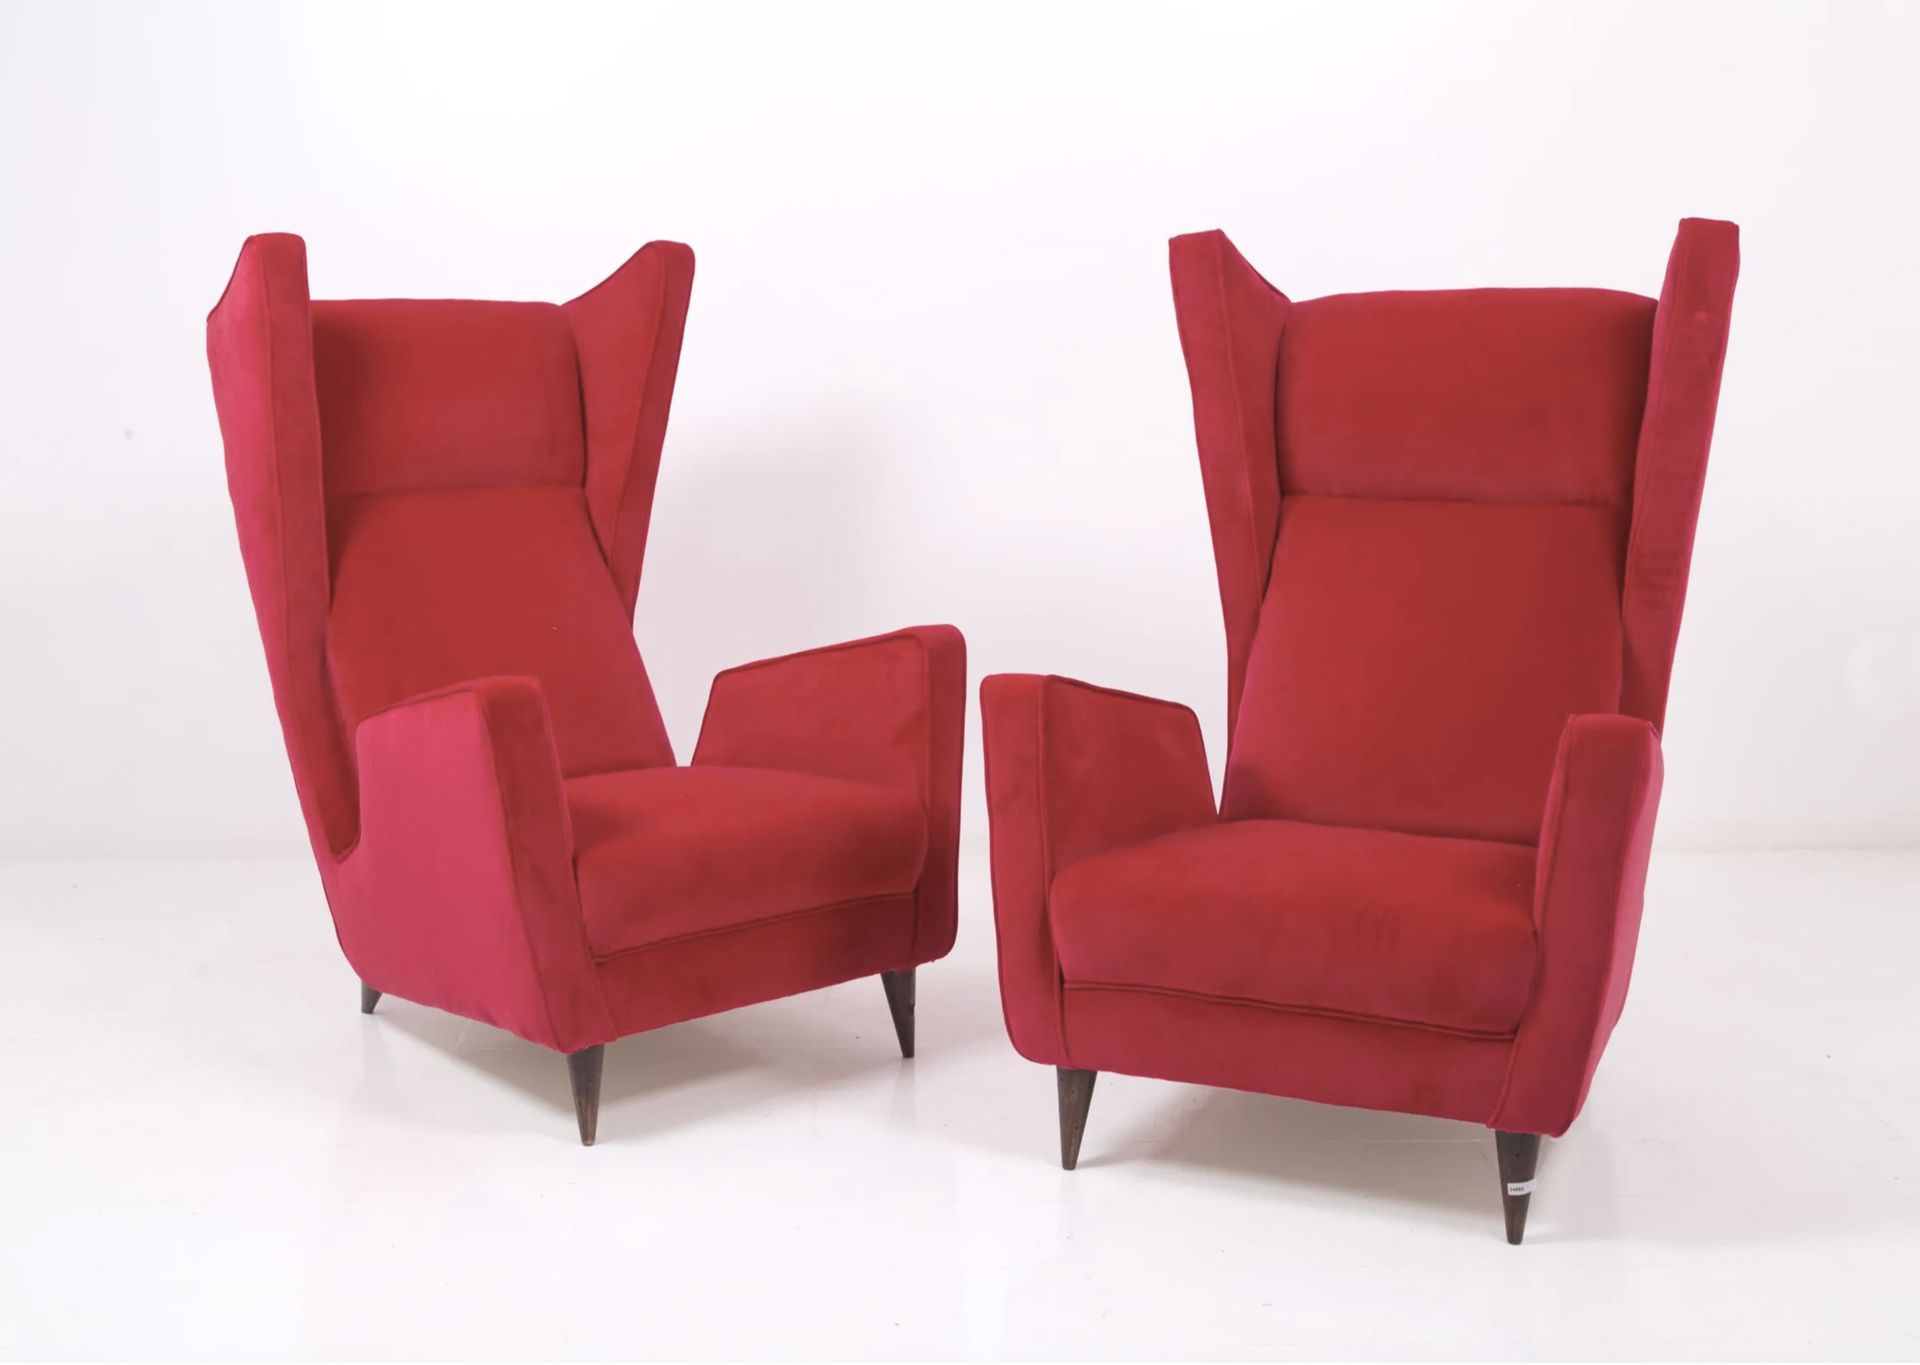 MARIO OREGLIA. Two red armchairs. 1940s MARIO OREGLIA (Fossano, 1916 - Torino, 1&hellip;